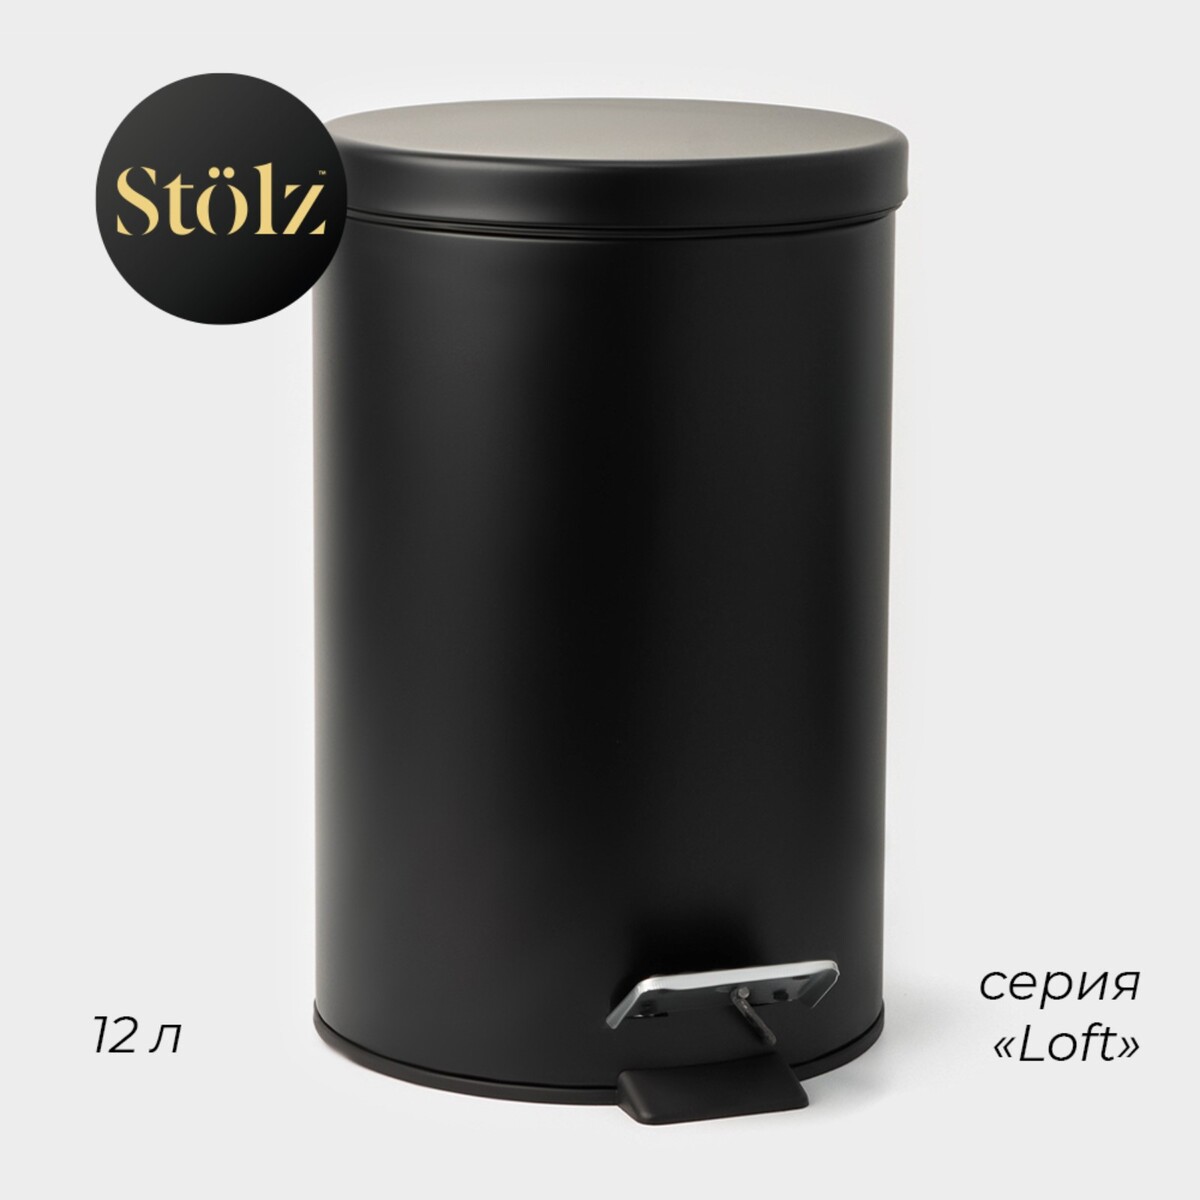 Ведро мусорное с педалью штольц stölz, 12 л, нержавеющая сталь, цвет черный настольное мусорное ведро